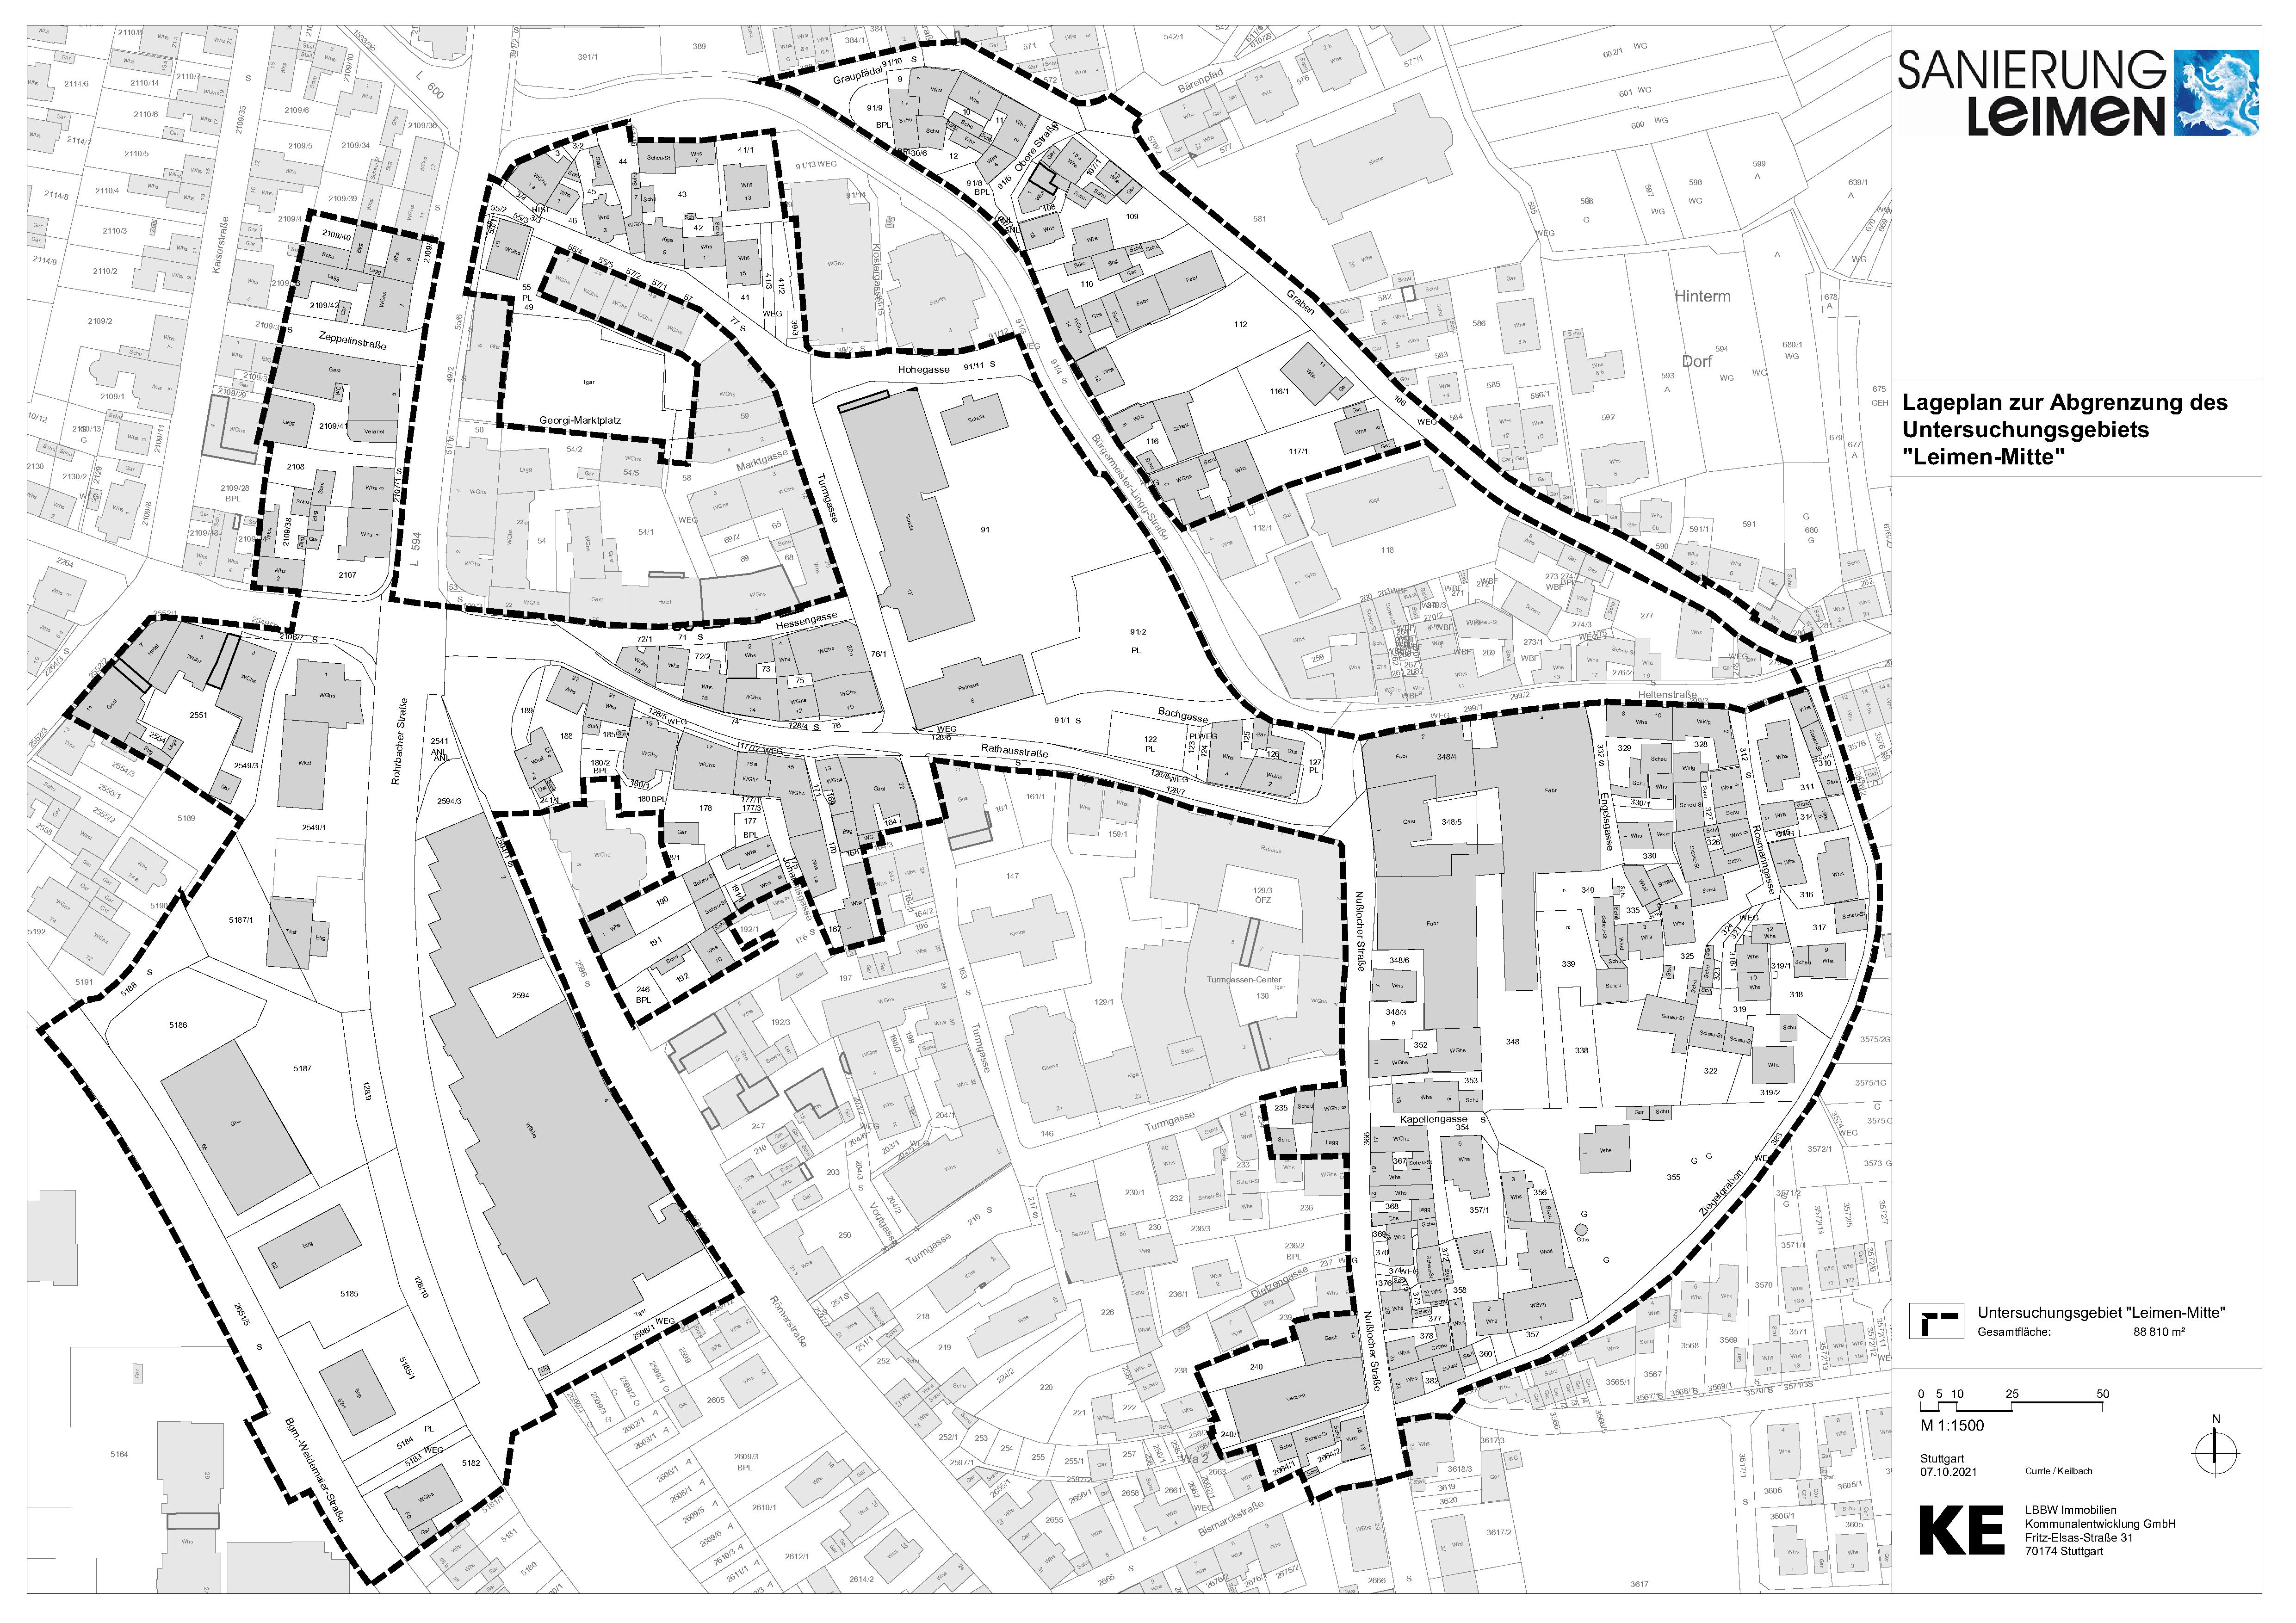  Lageplan zur Abgrenzung des Untersuchungsgebietes "Leimen-Mitte" 